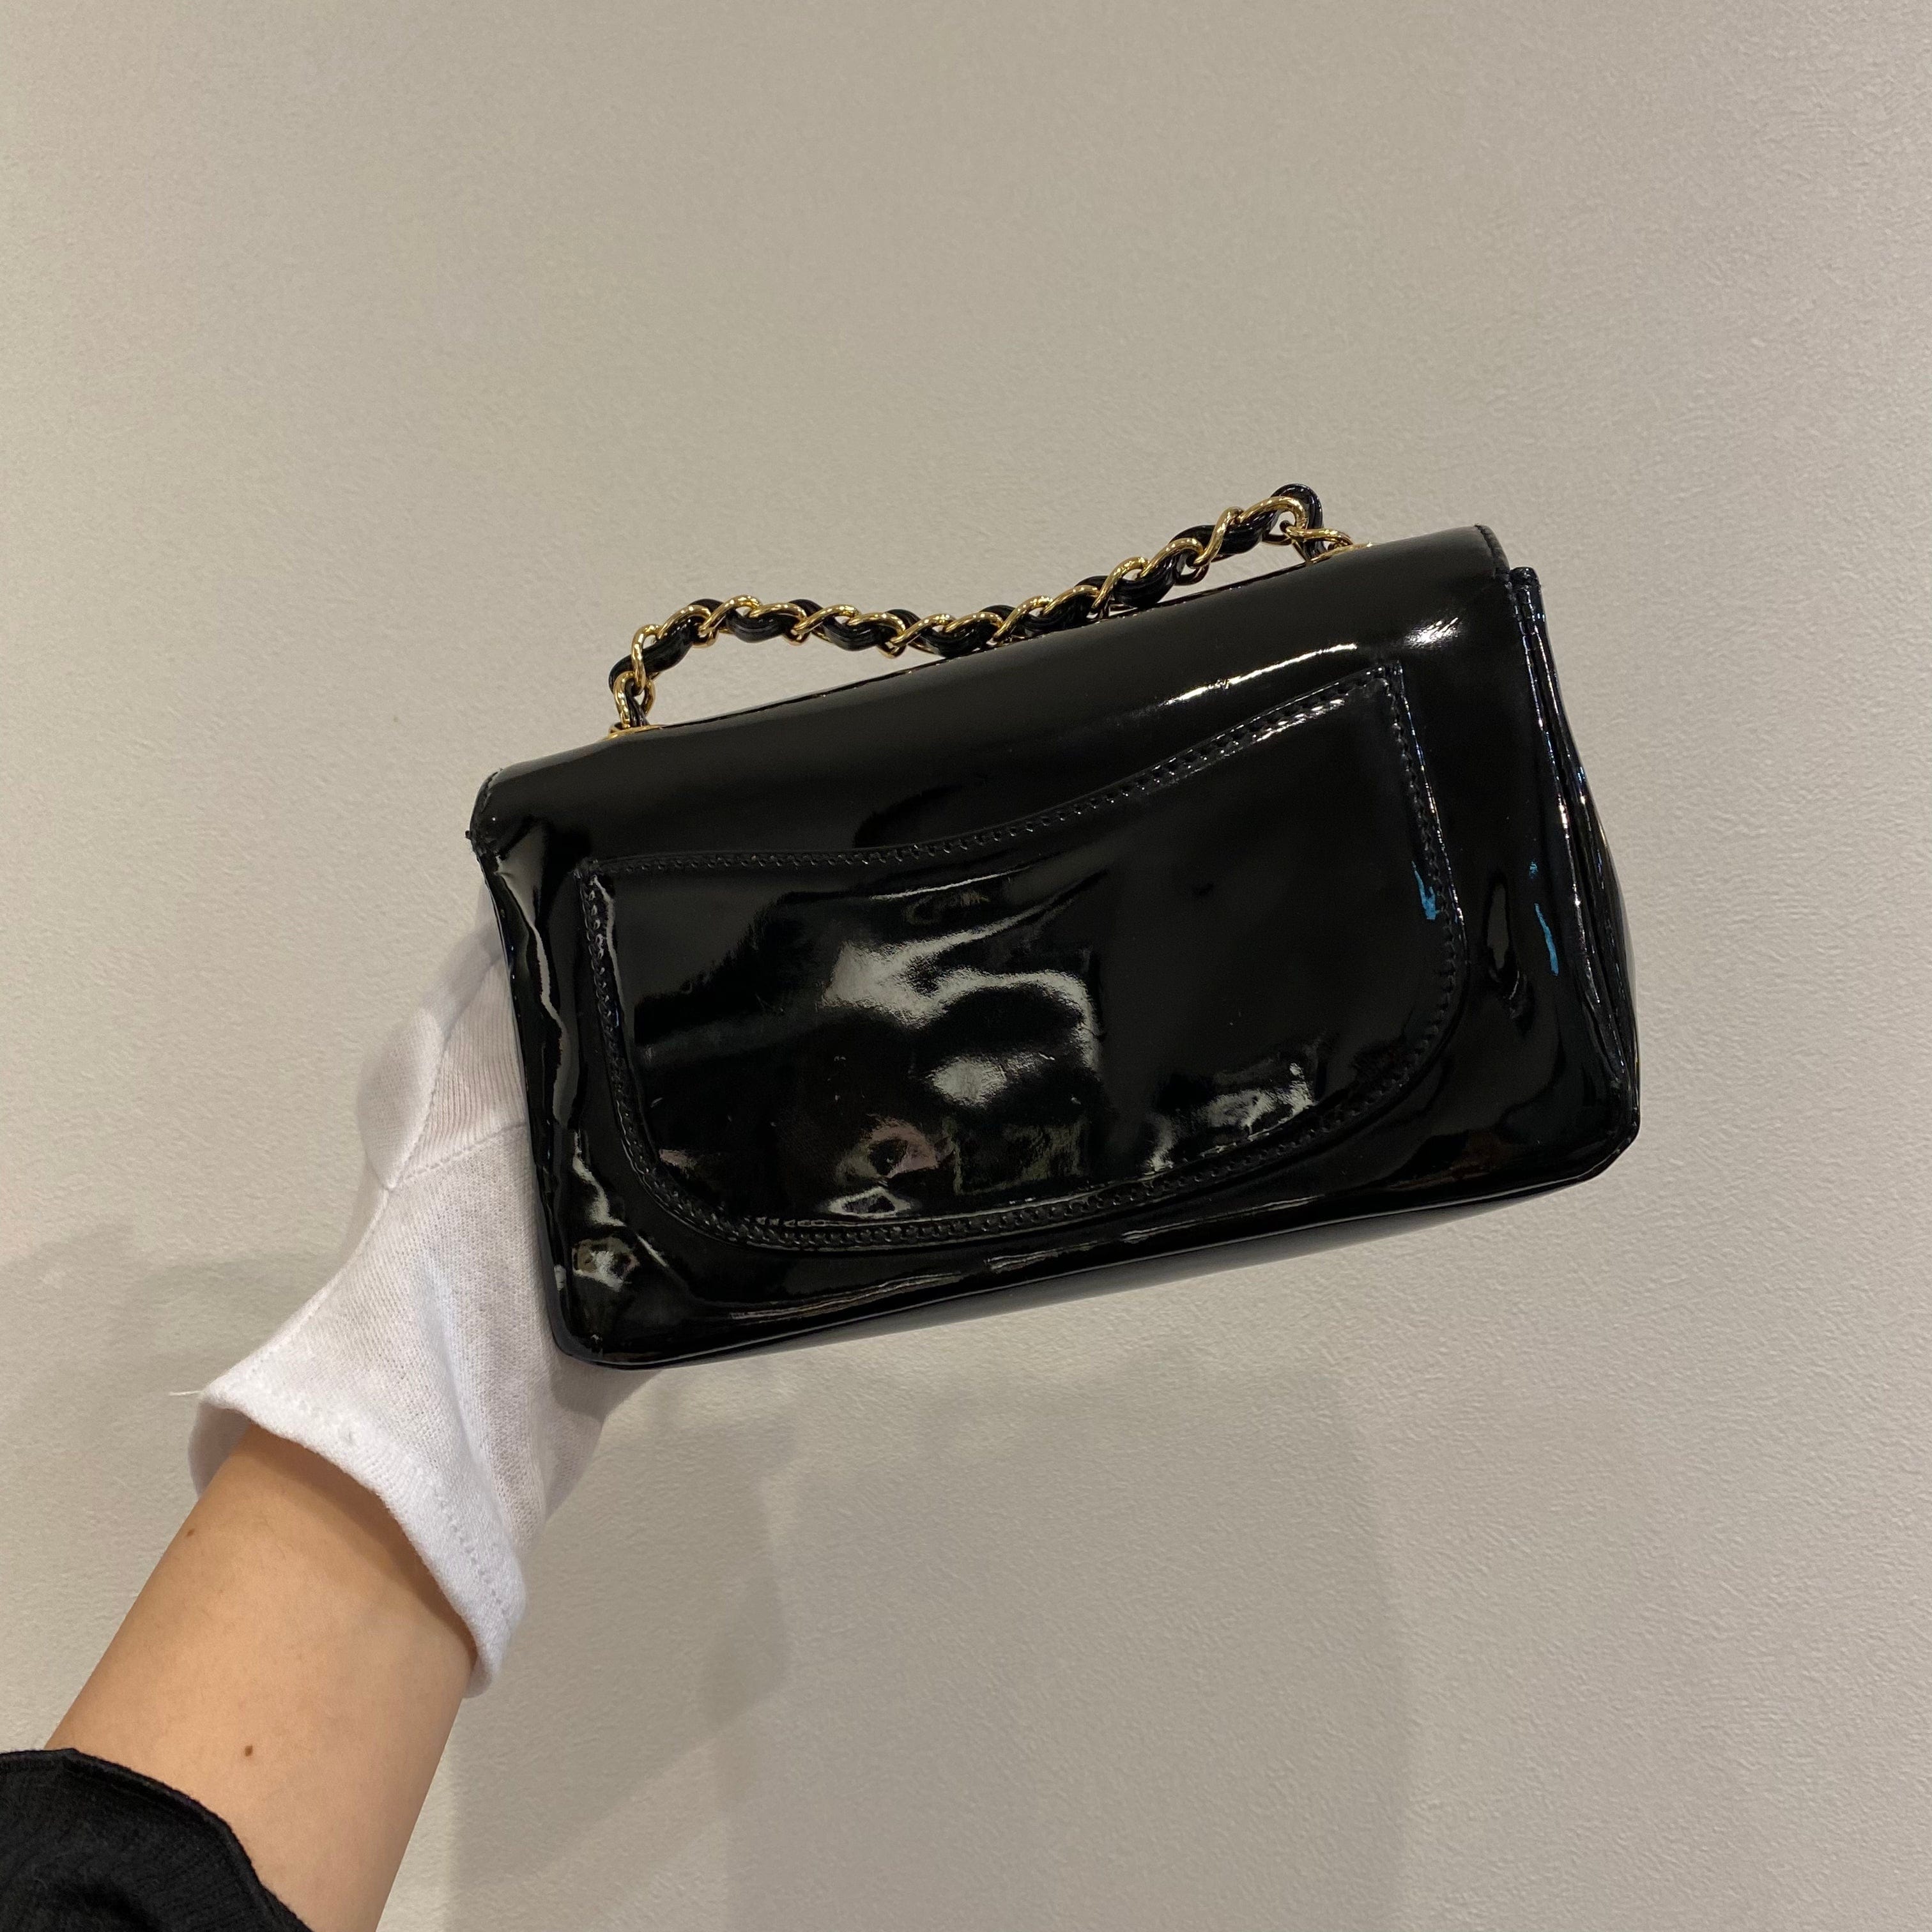 Chanel CHANEL VINTAGE CAMELLIA MINI CHAIN SHOULDER BAG BLACK ENAMEL 90209502